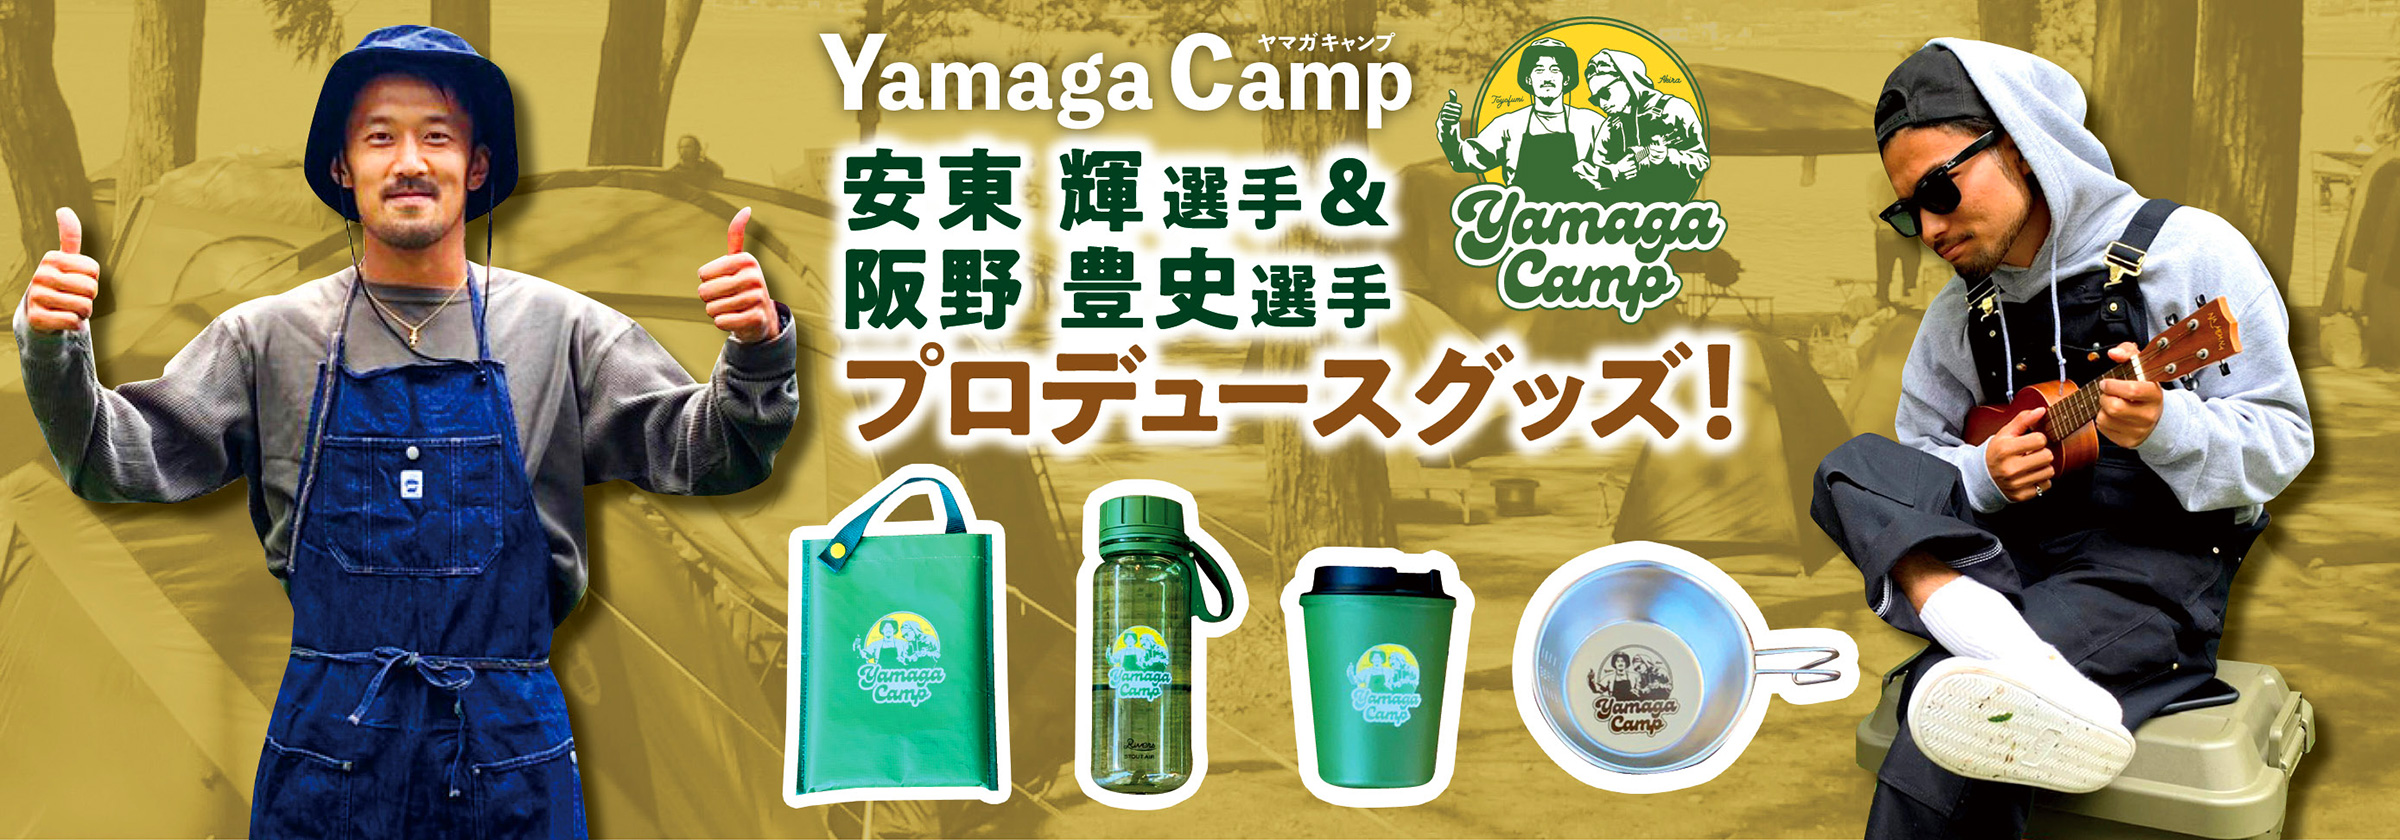 YAMAGA CAMP